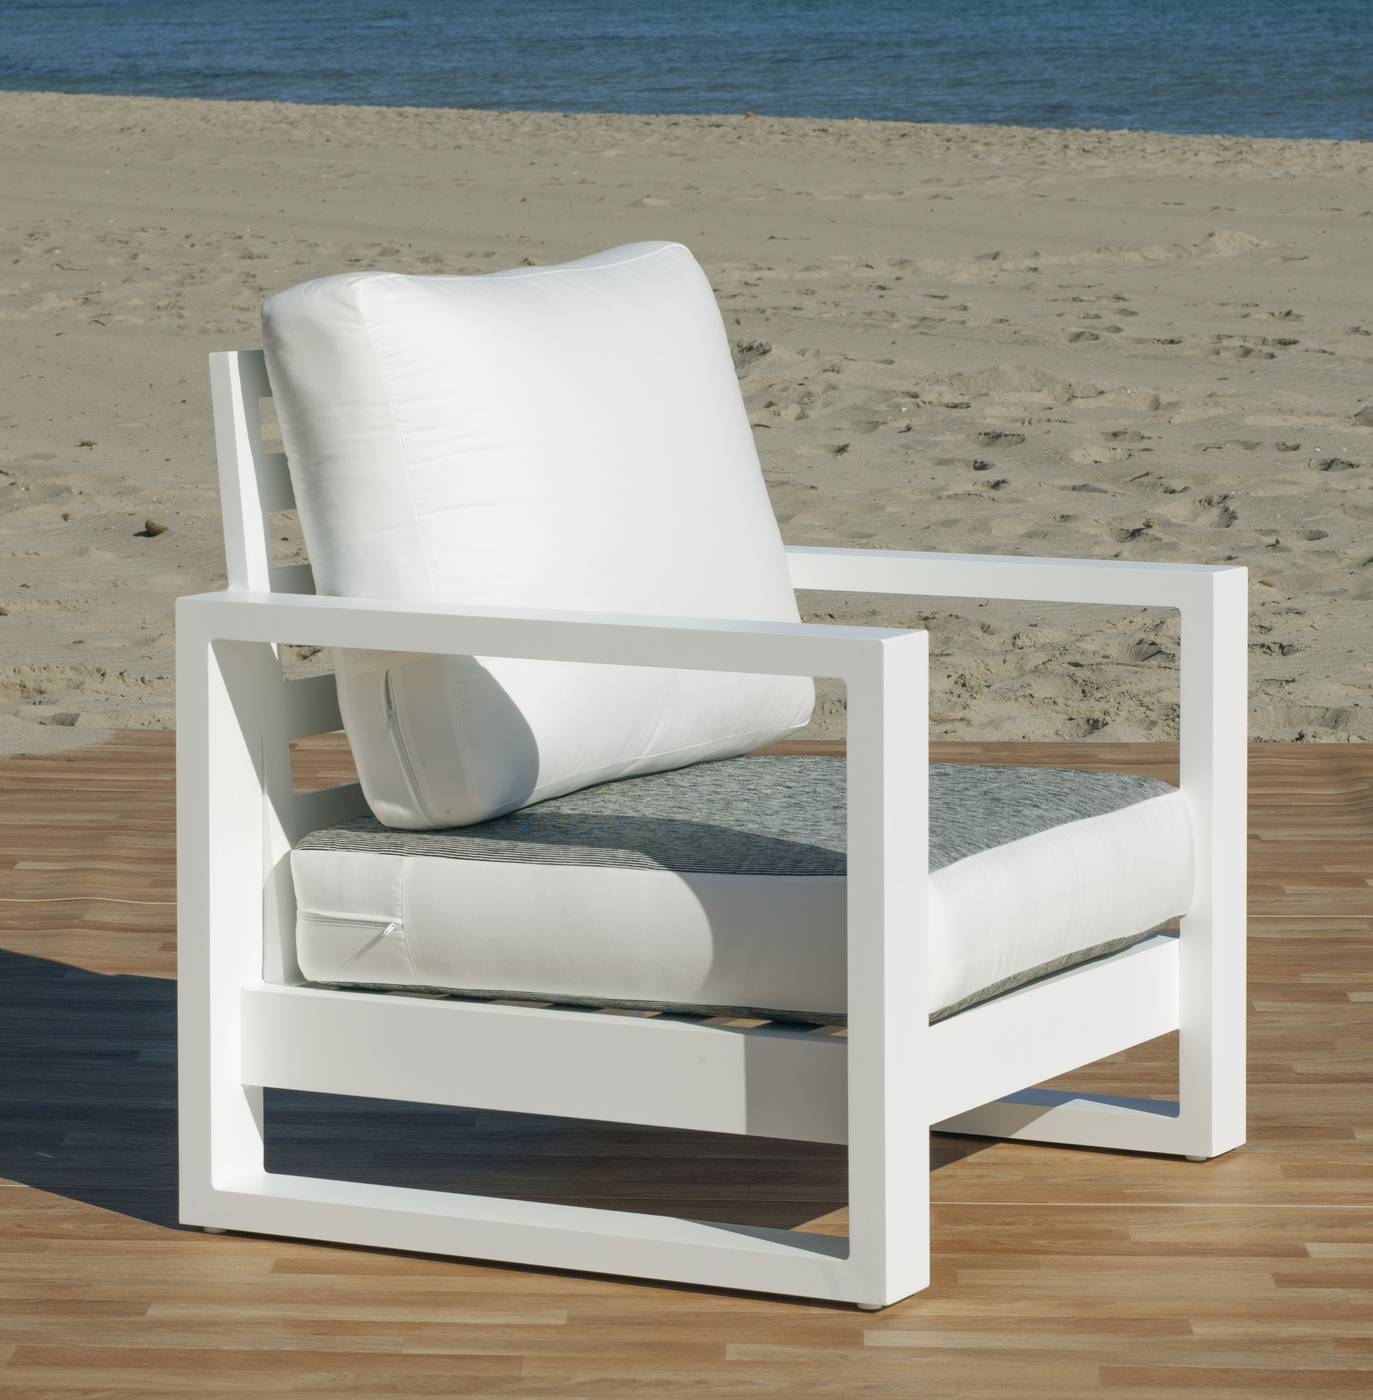 Set Aluminio Luxe Cartago-10 - Conjunto lujoso y robusto de aluminio: 1 sofá de 3 plazas + 2 sillones + 2 reposapiés + 1 mesa de centro. Disponible en color blanco, antracita, champagne, plata o marrón.